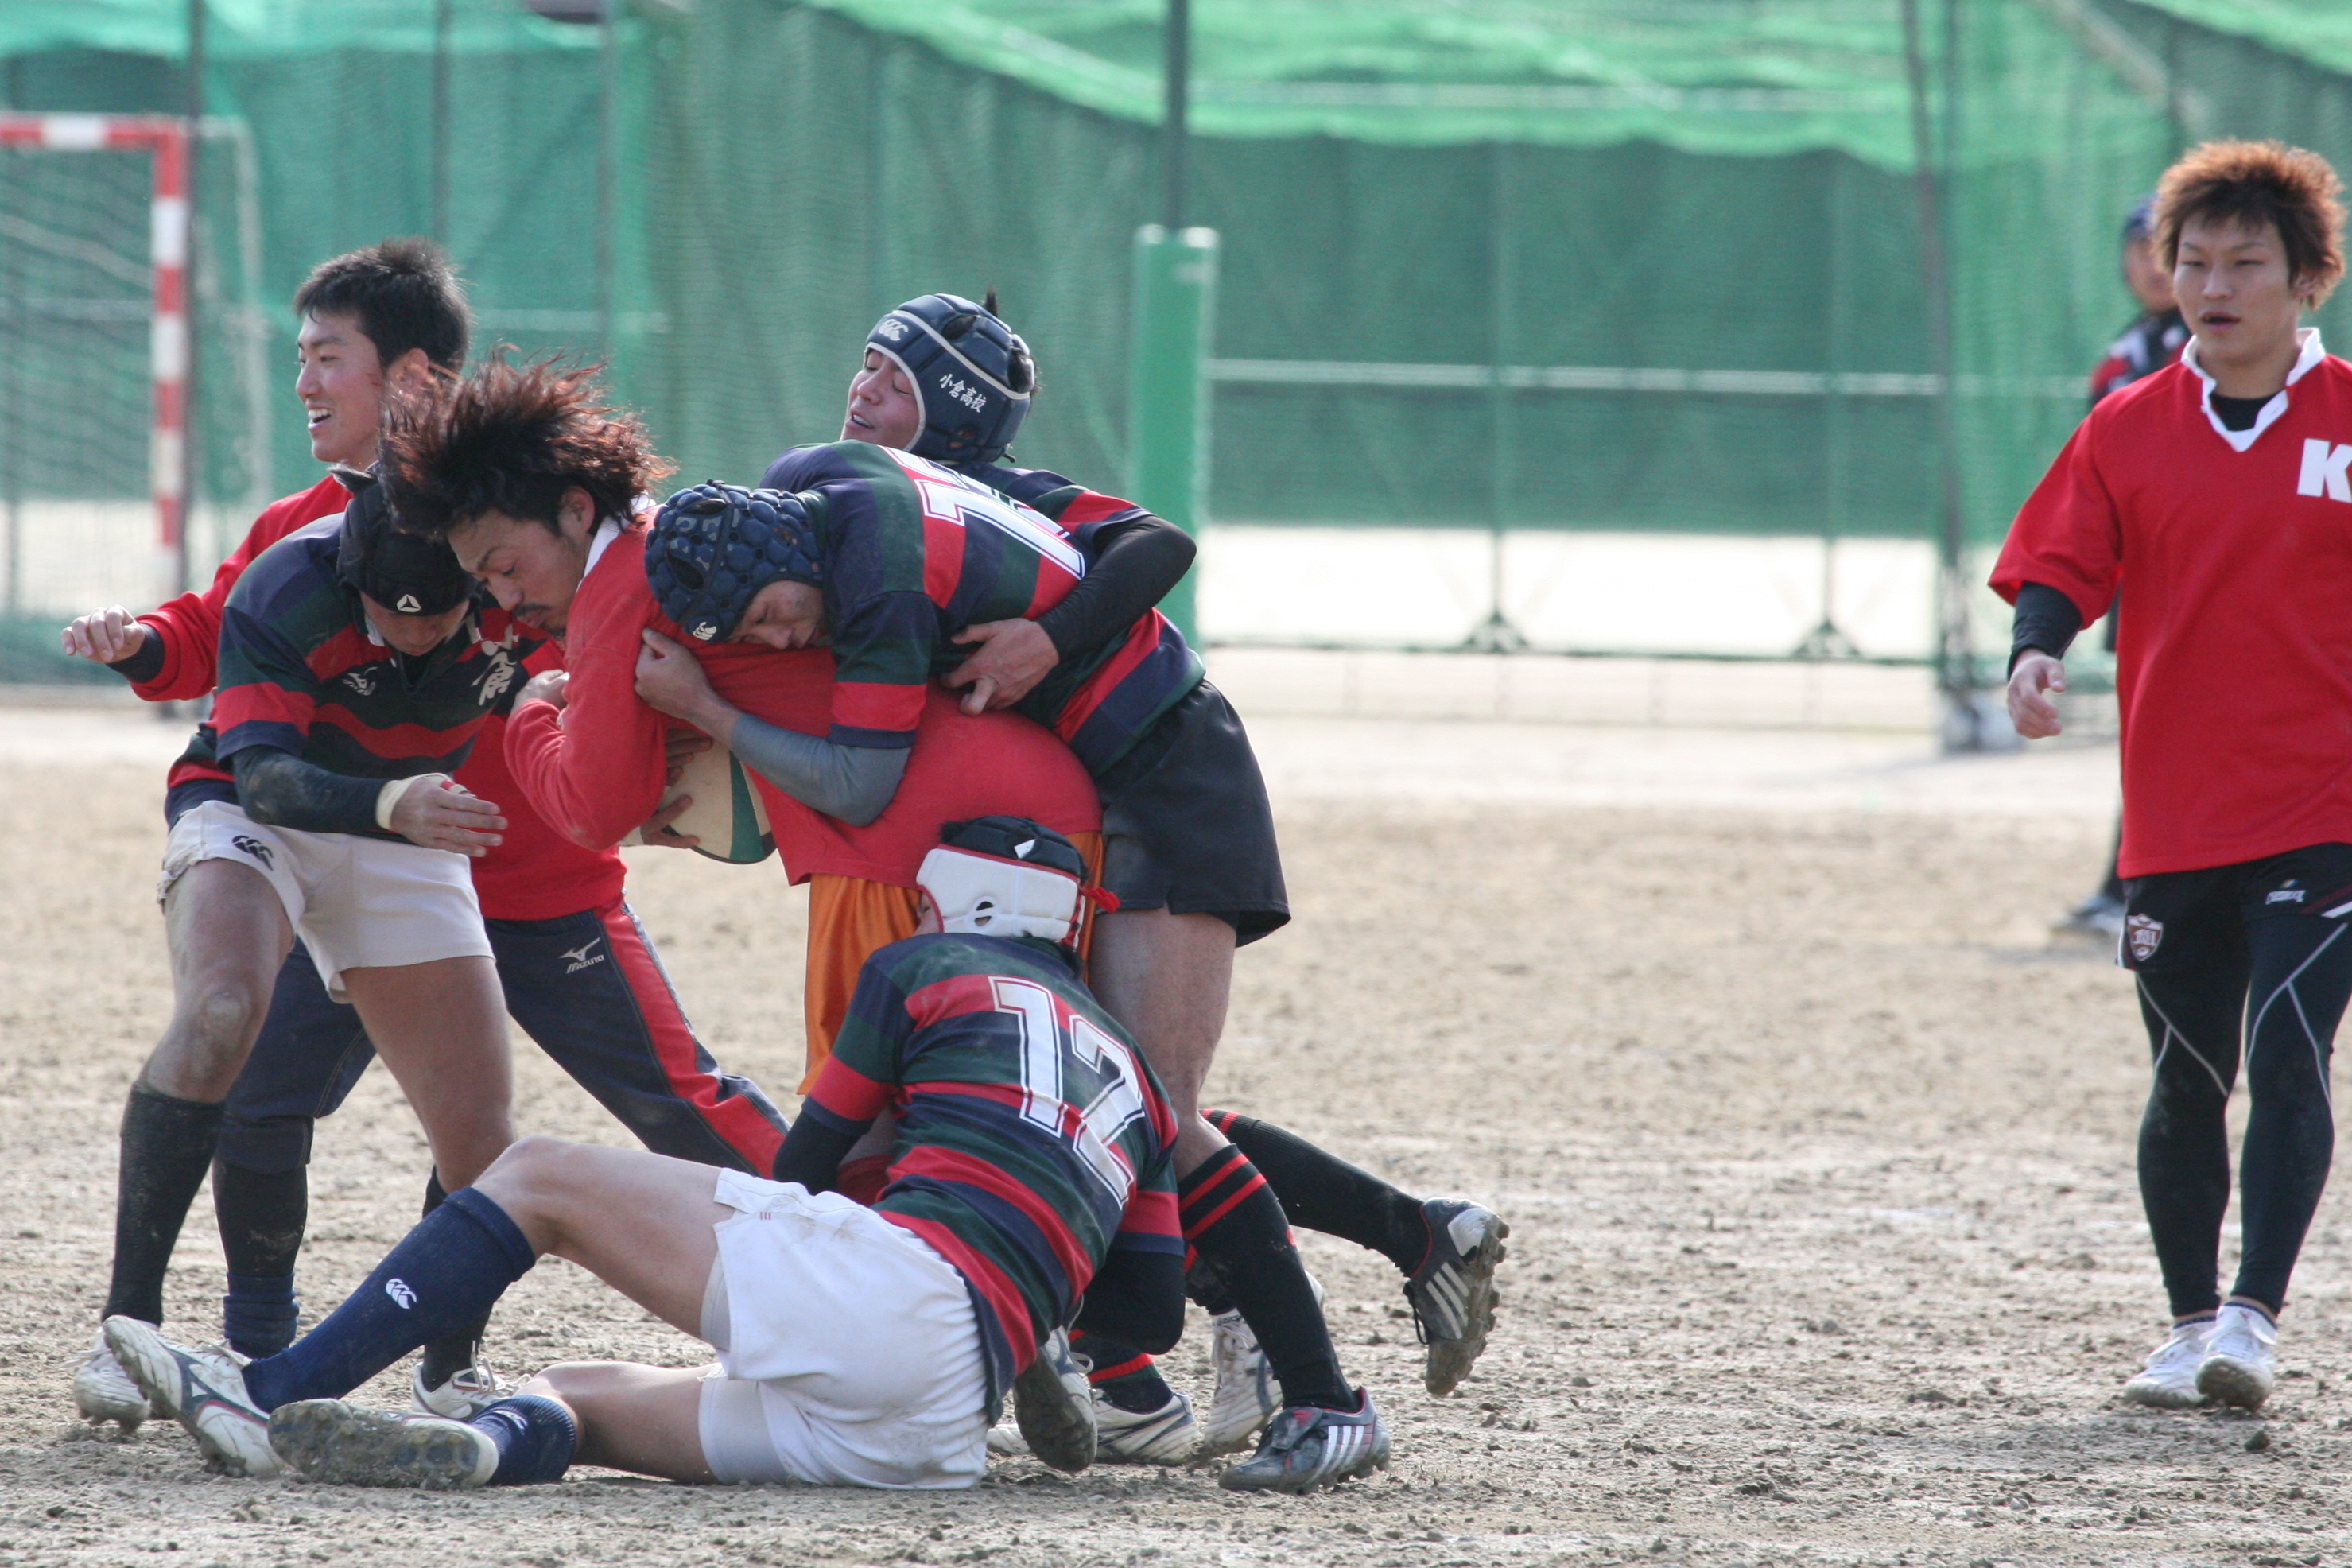 http://kokura-rugby.sakura.ne.jp/2010.3.1%E3%83%BBOB%E6%88%A65.JPG